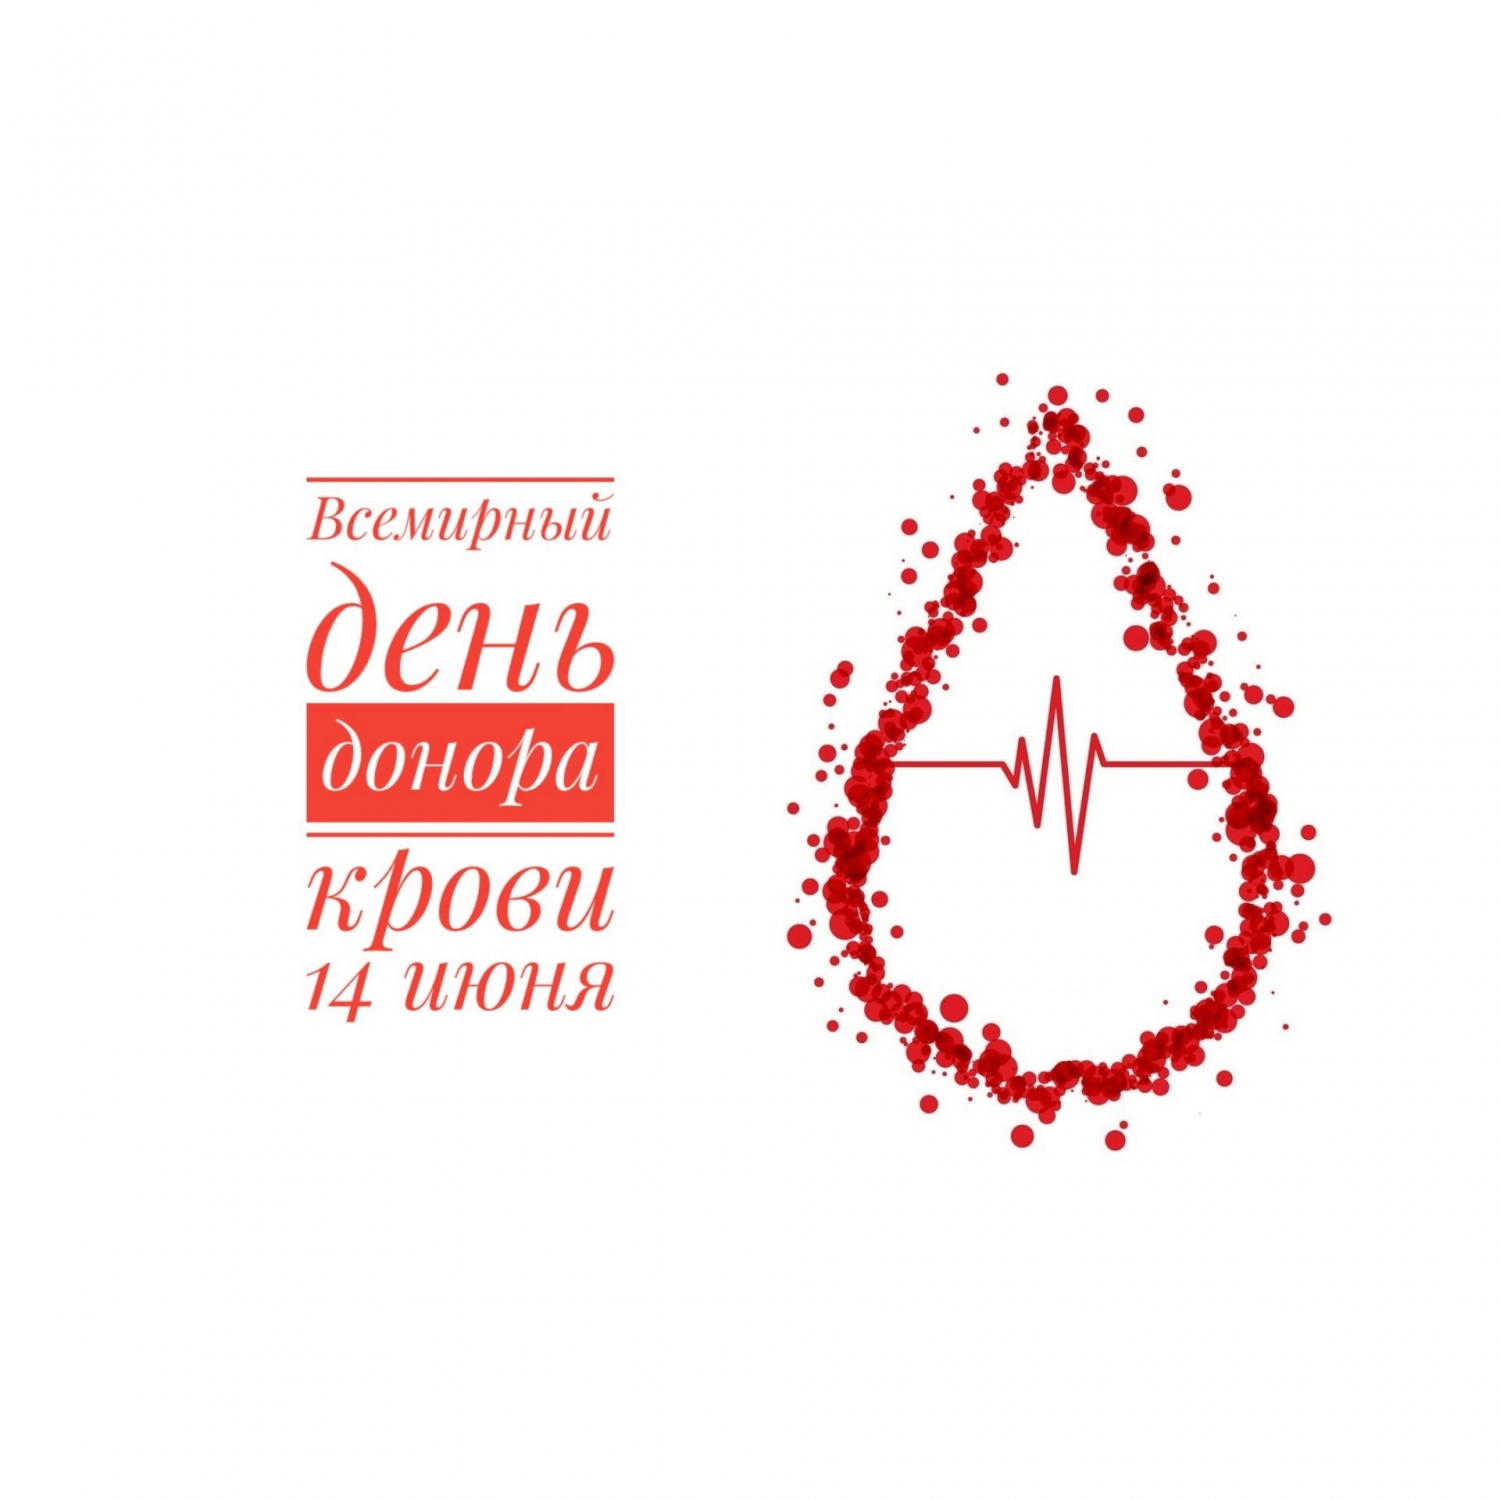 Всемирный день донора крови - 14 июня